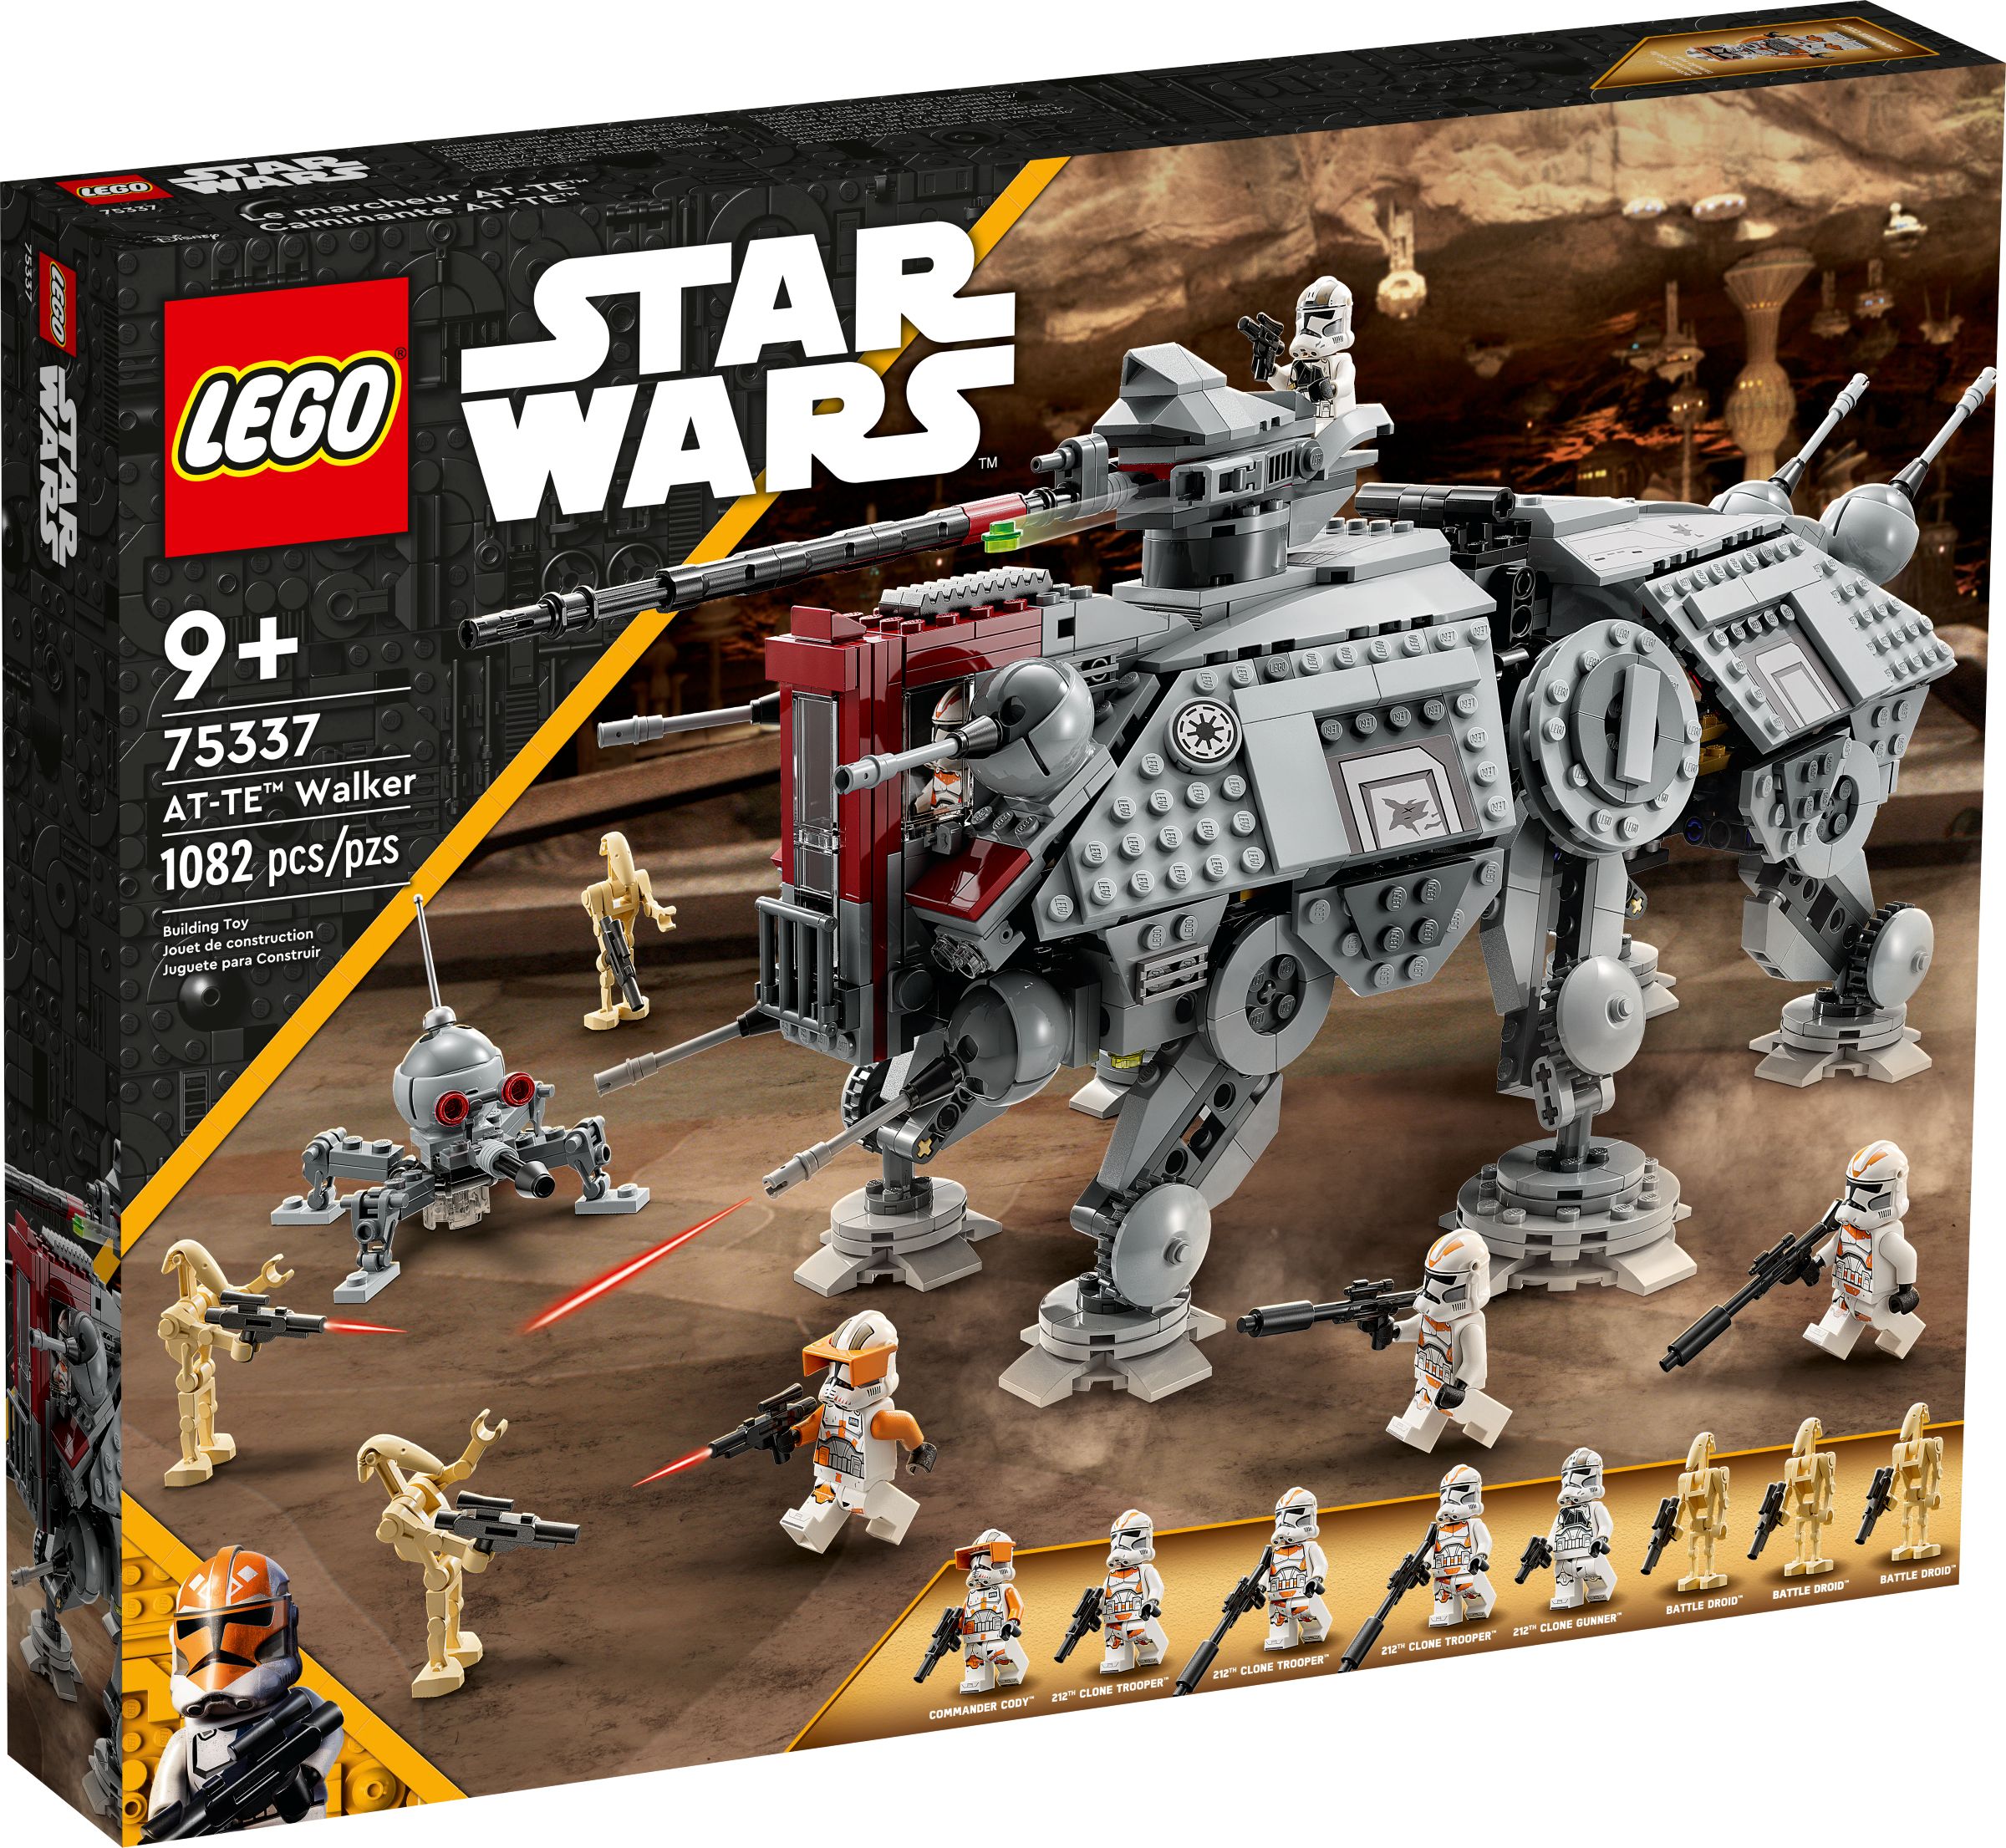 LEGO Star Wars 75337 AT-TE™ Walker LEGO_75337_alt1.jpg